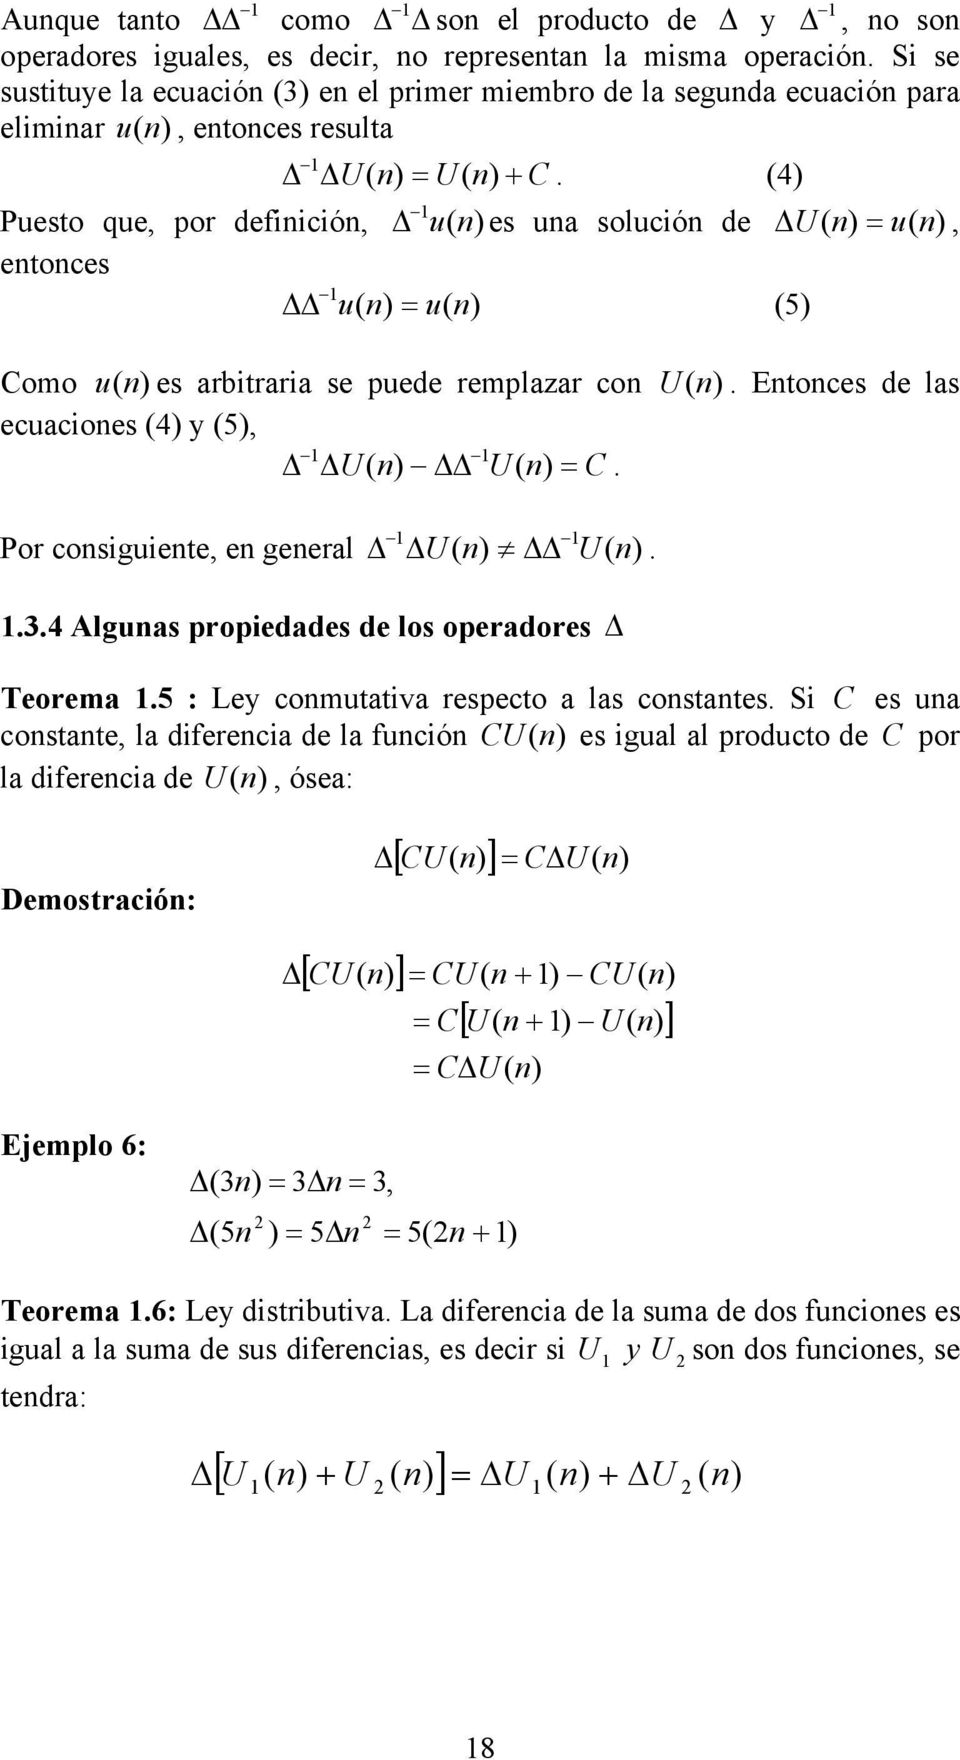 los operadores Teorema 5 : Ley comutativa respecto a las costates Si C es ua costate la diferecia de la fució CU es igual al producto de C por la diferecia de U ósea: Demostració: [ CU ] [ CU ] C U